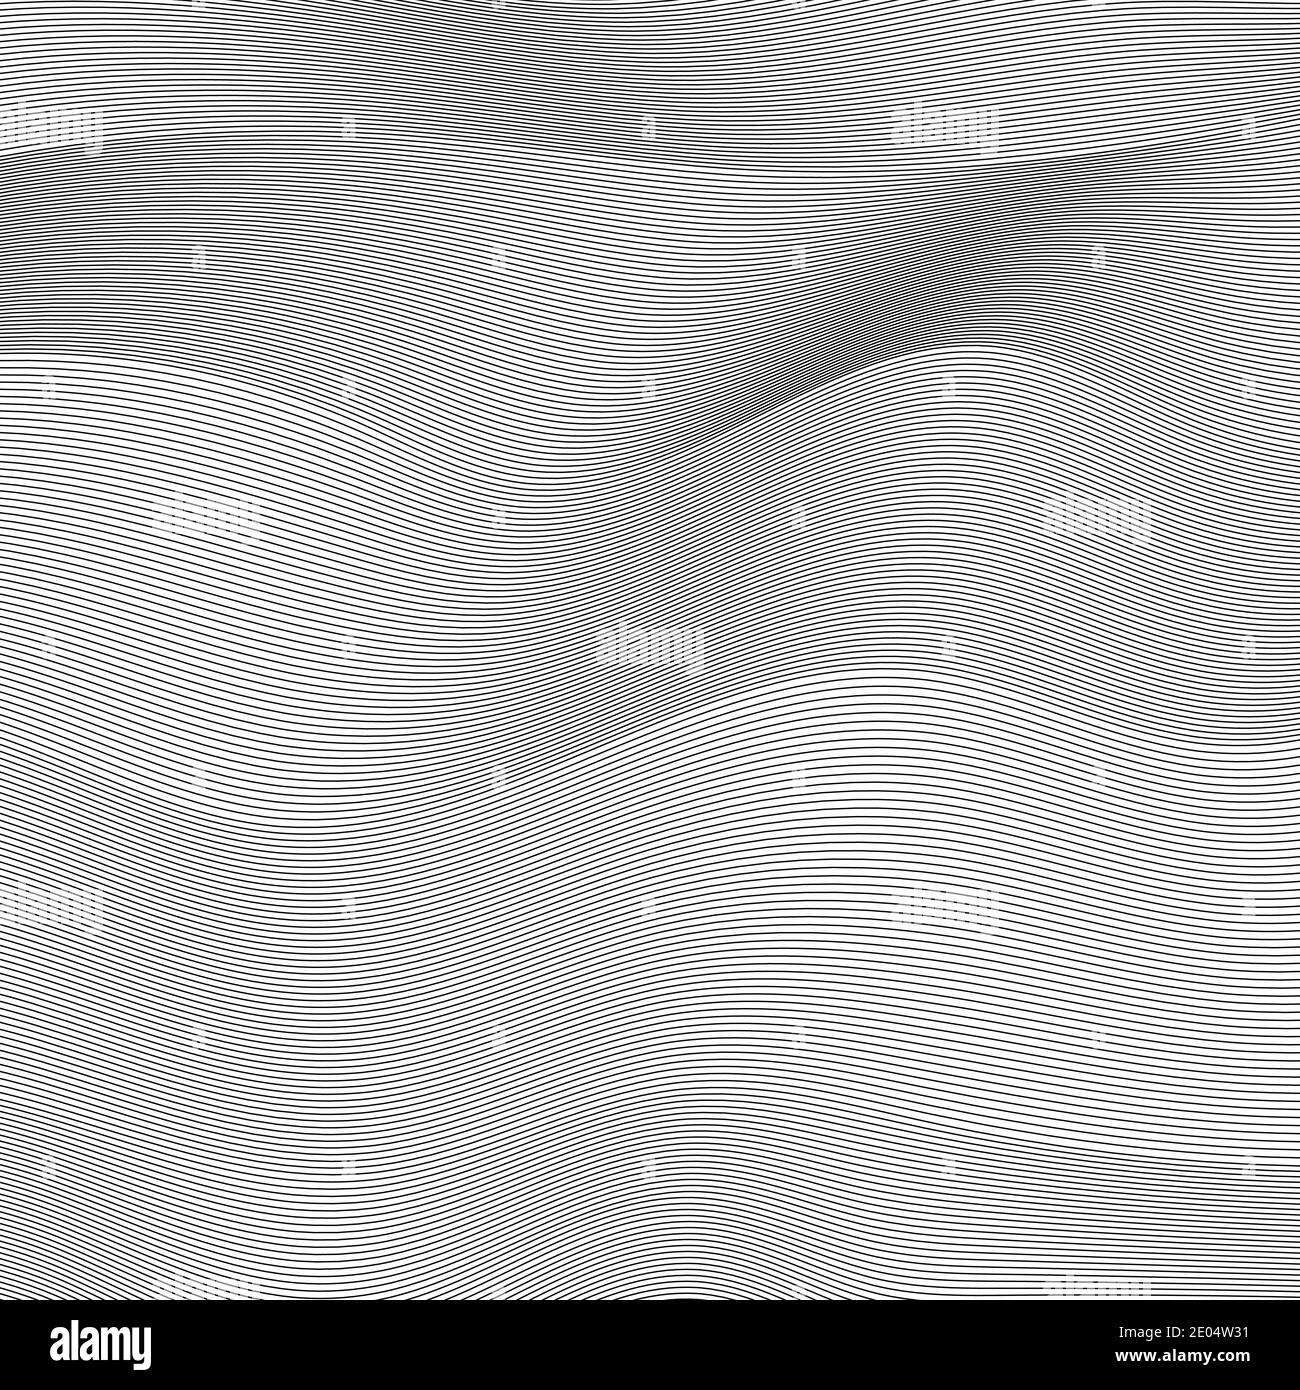 Hintergrund wellige Linien abstraktes Muster Vektor wellige Oberflächen Texturlinien Stock Vektor